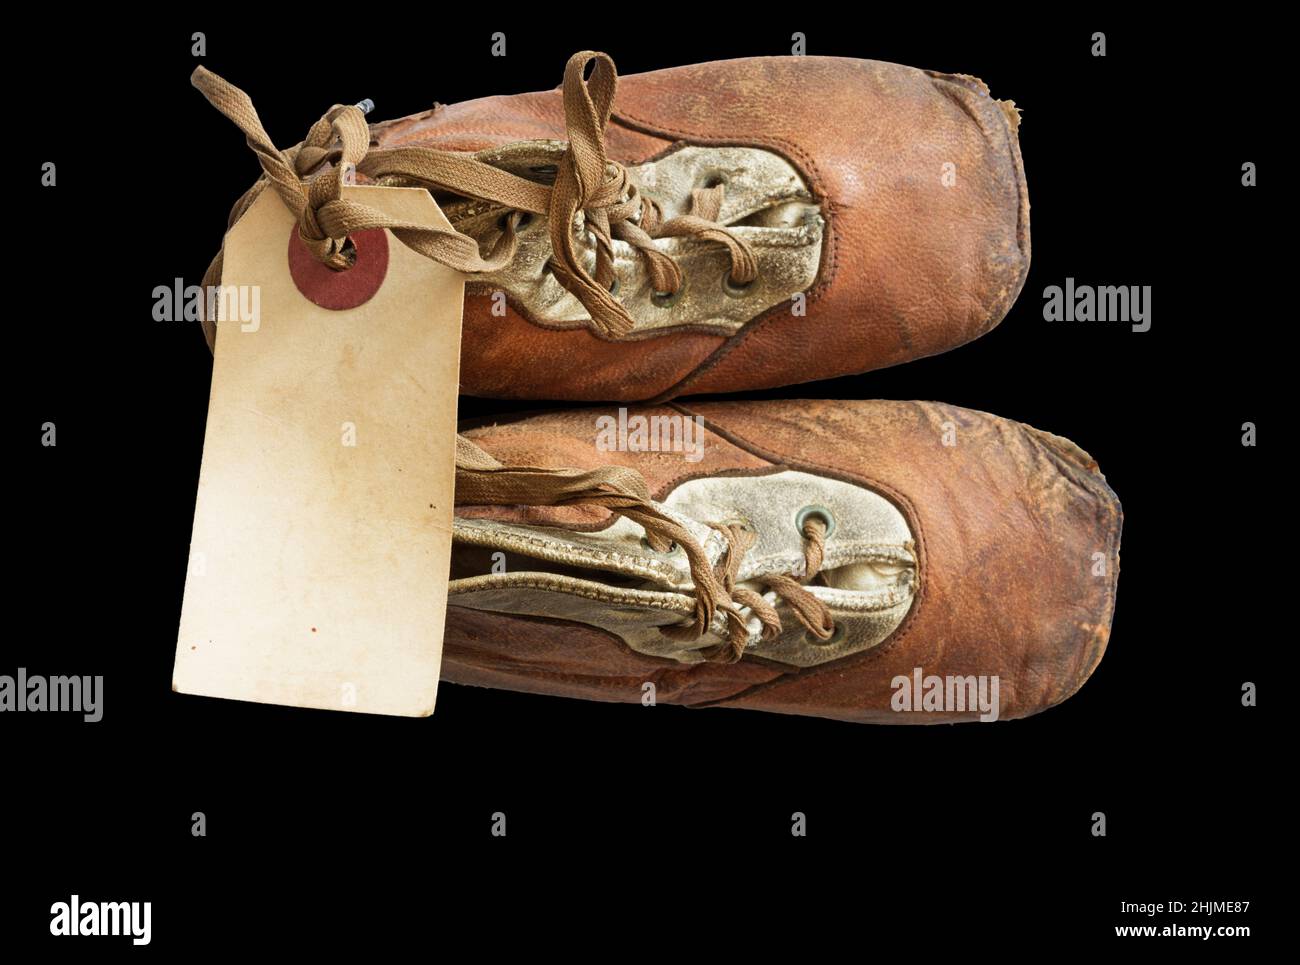 zapatos viejos de bebé de 1908 con una etiqueta de papel en blanco atada a los cordones sobre fondo negro Foto de stock